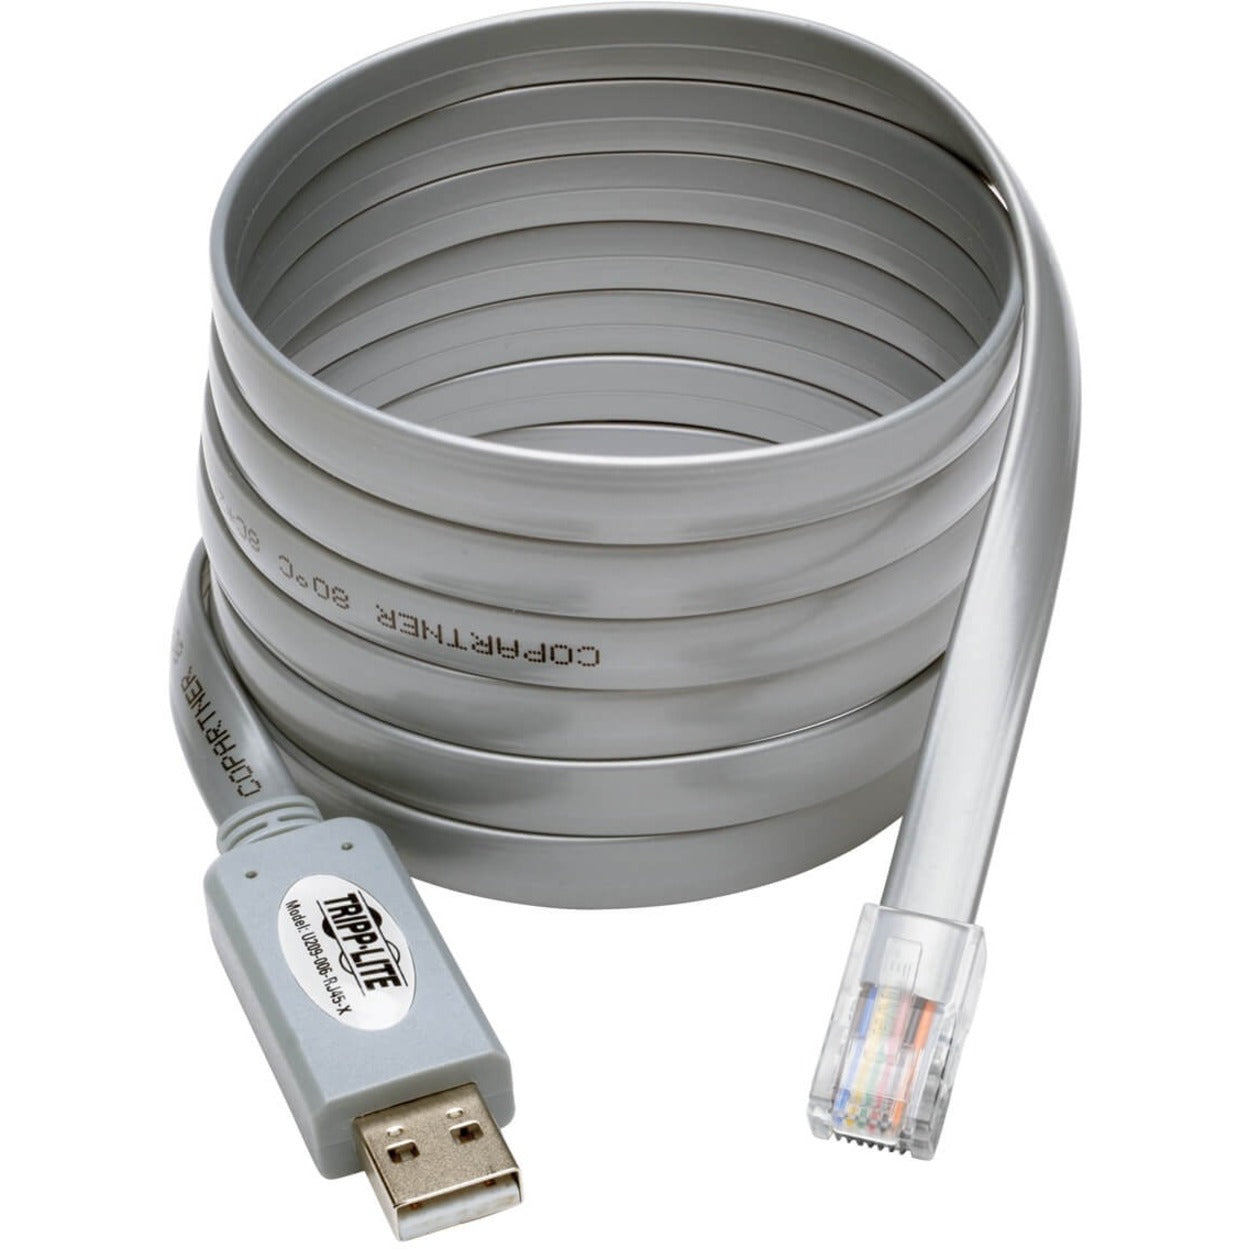 Tripp Lite U209-006-RJ45-X Cable de Rollover Serial Cisco USB a RJ45 USB Tipo-A a RJ45 M/M 6 pies Protección Contra Diafonía Protección EMI/RF. Marca: Tripp Lite (Traducción: Viaje Ligero)